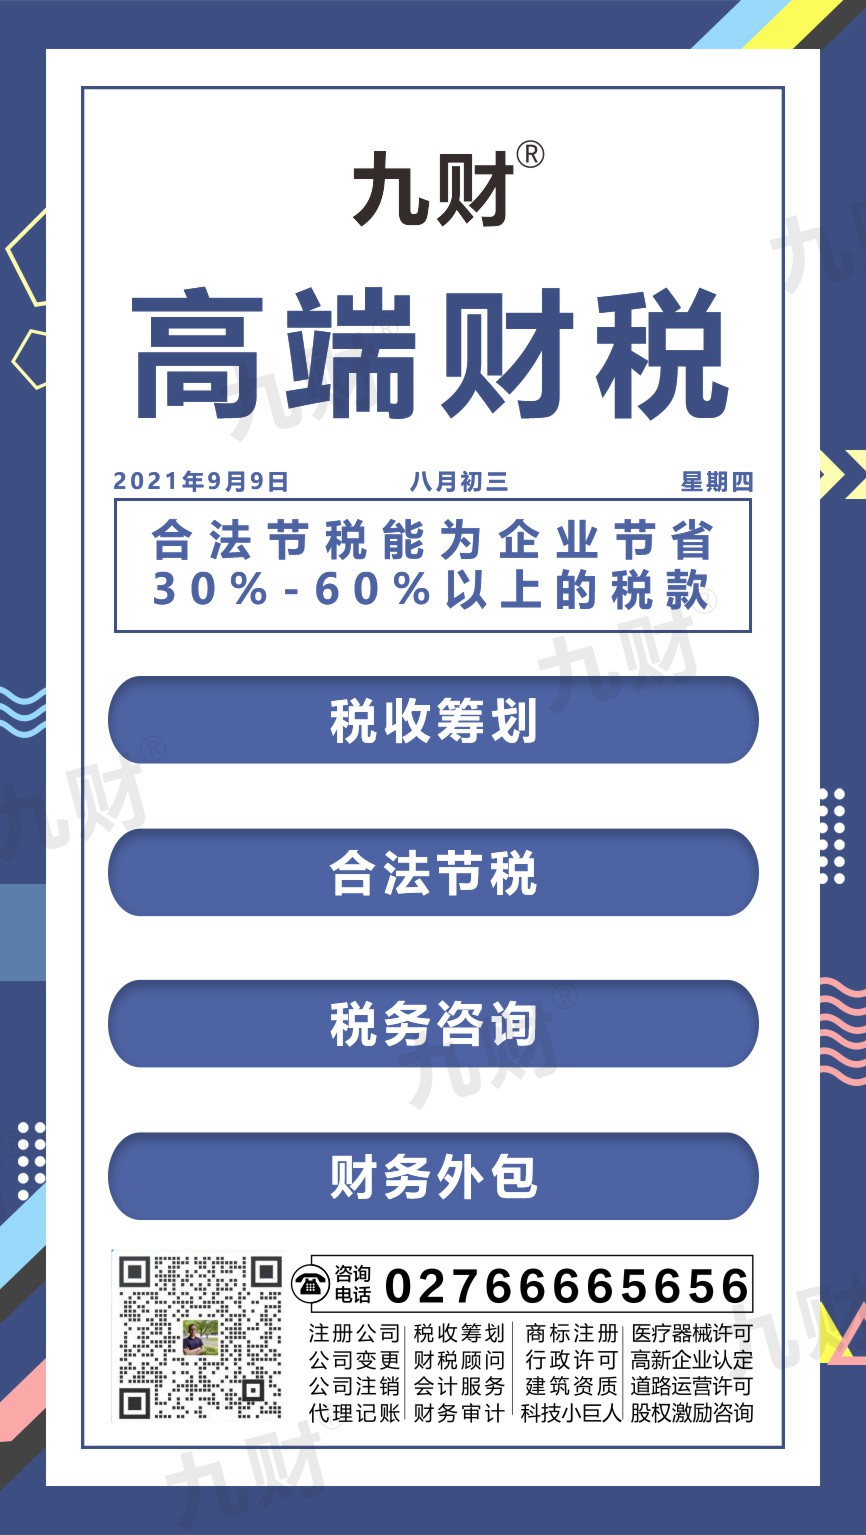 汉南区武汉东湖区股东变更网上如何填写资料申请